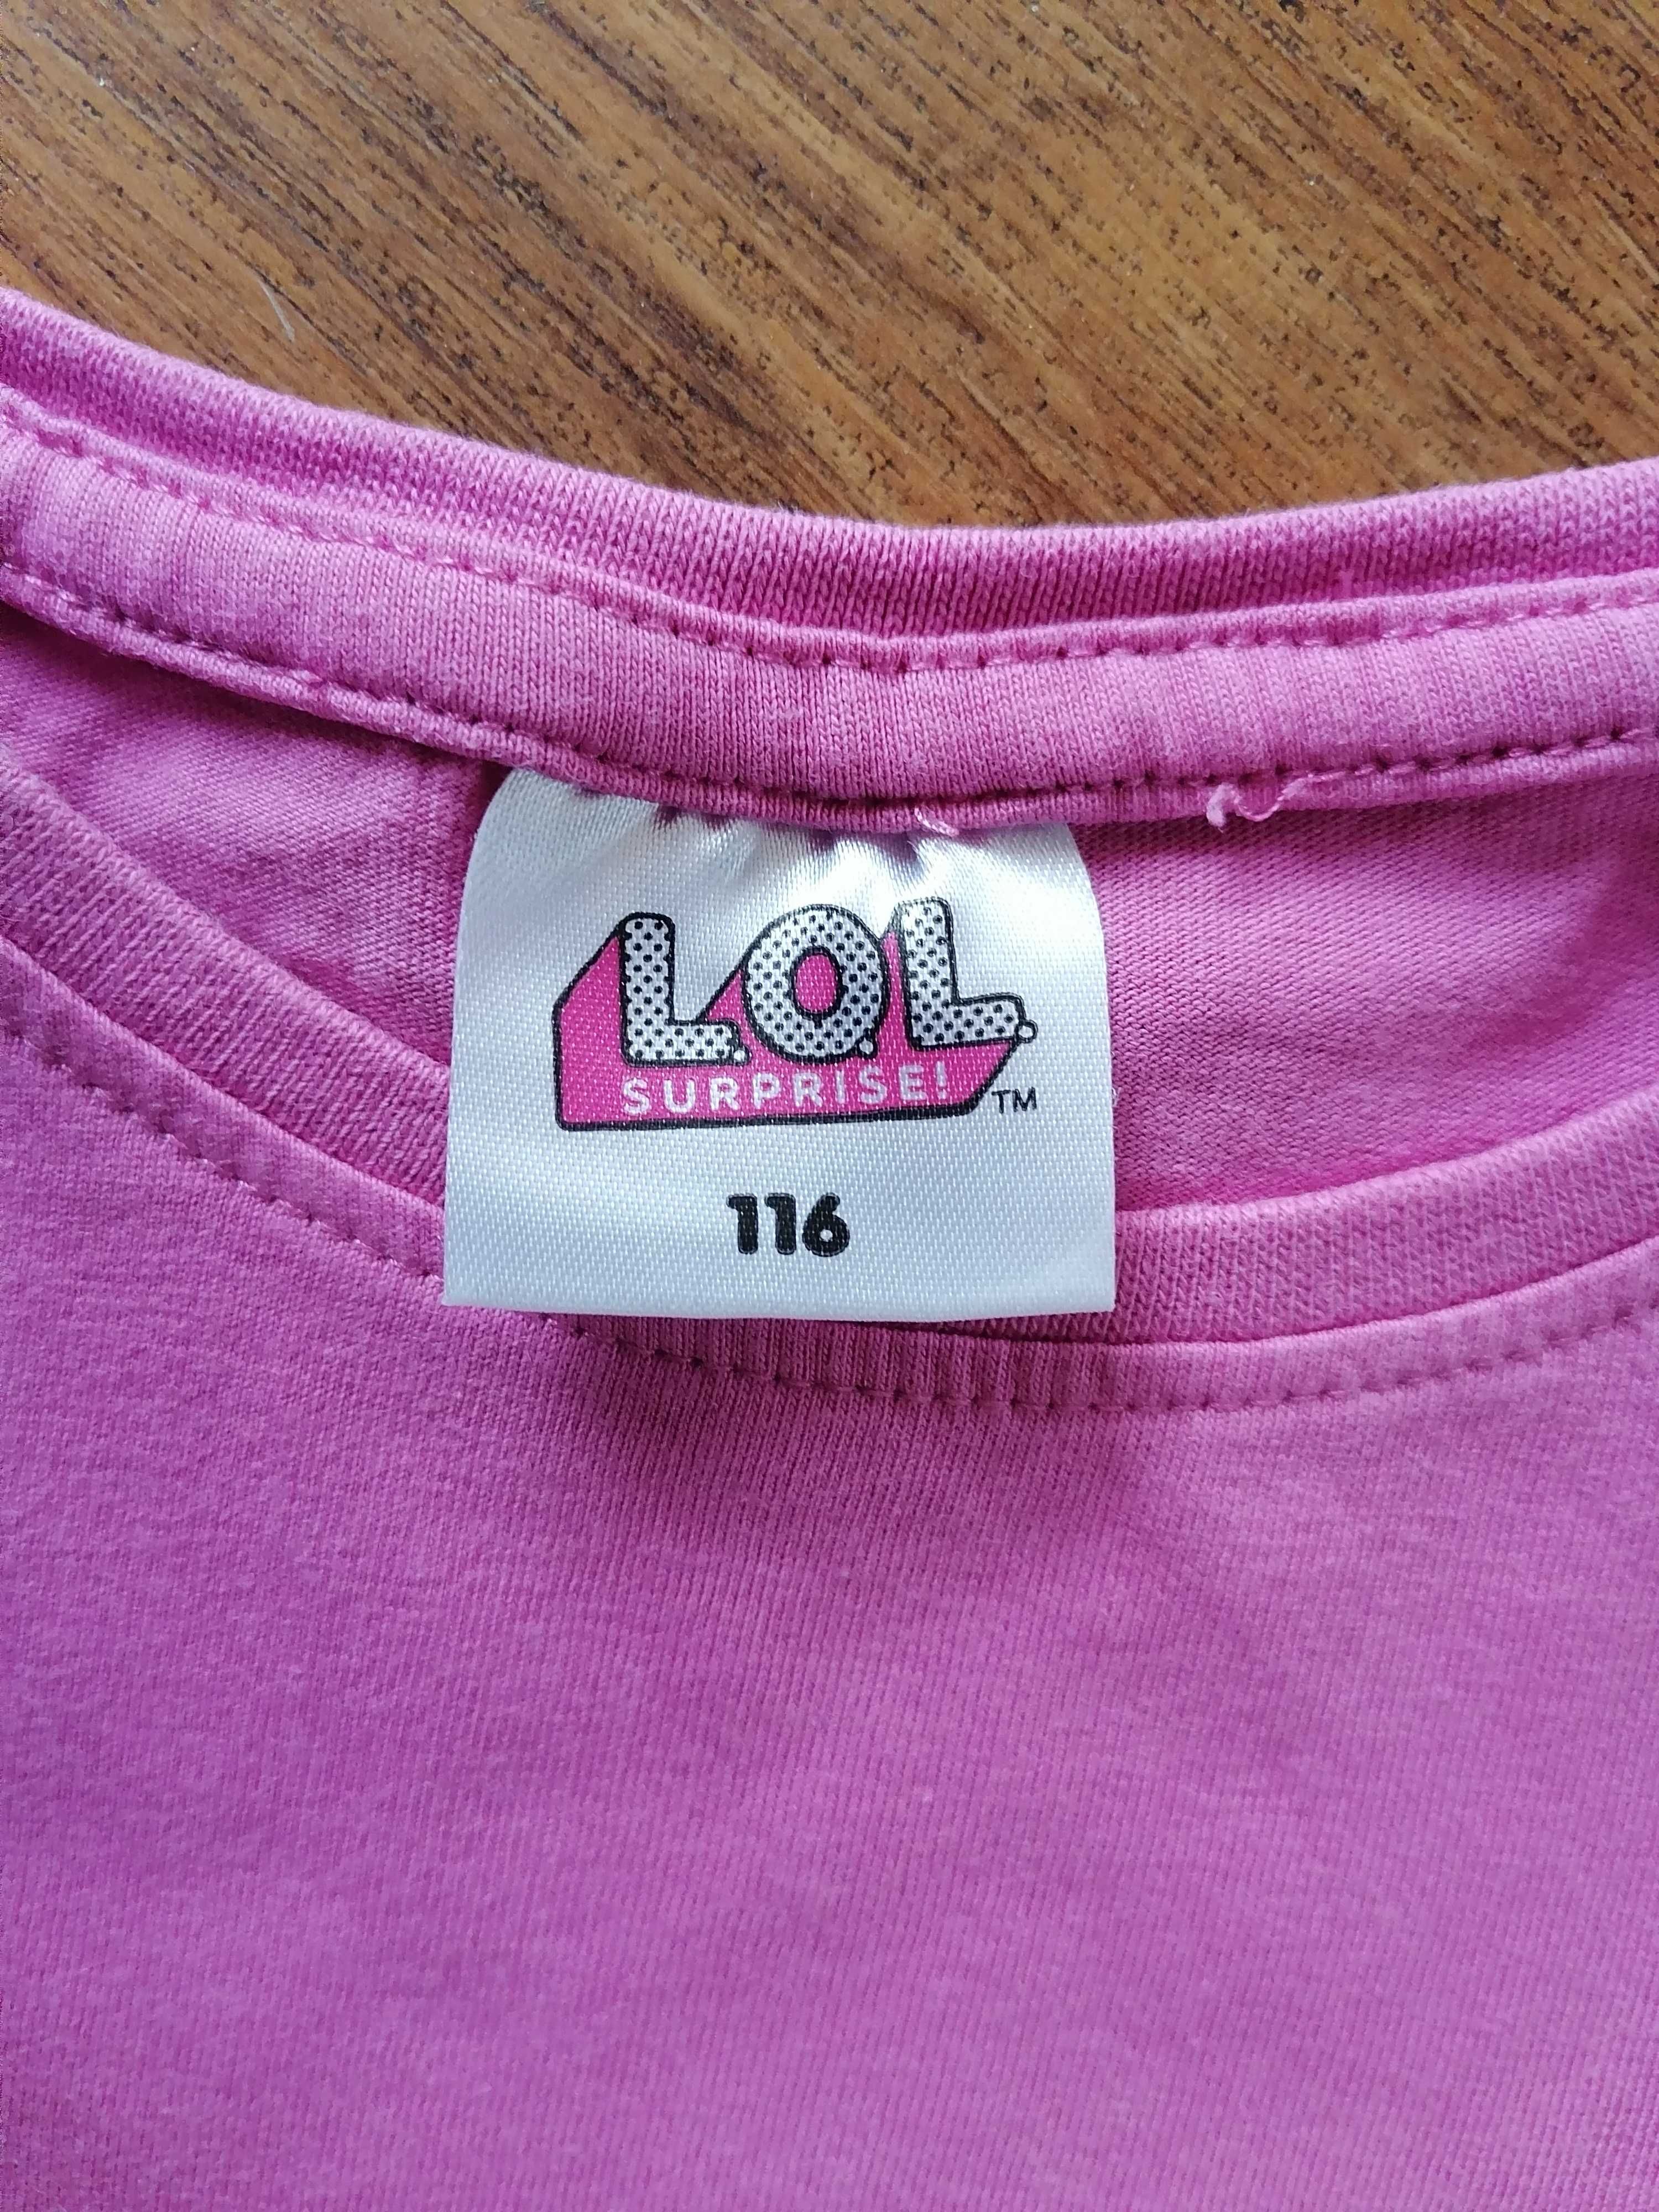 Bluzka dla dziewczynki r 116